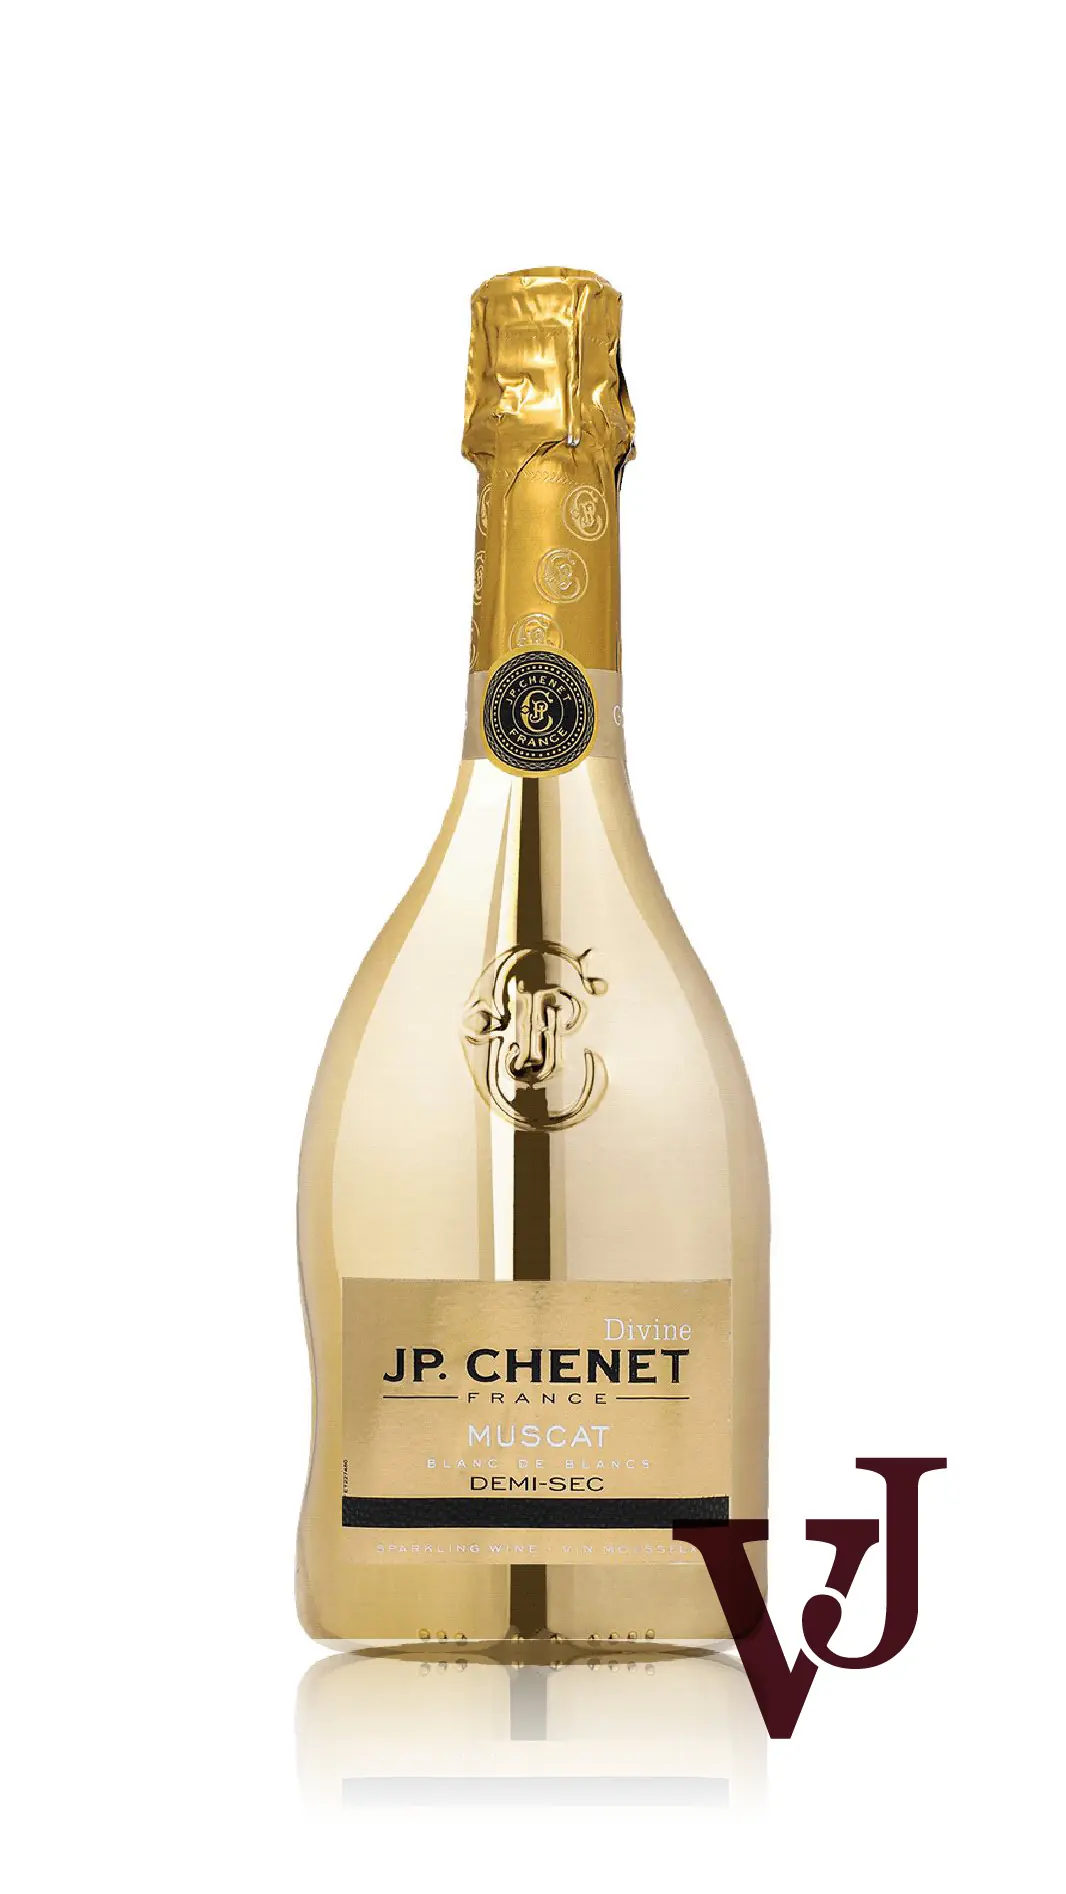 Mousserande Vin - JP Chenet Gold Sparkling Demi-sec artikel nummer 7924001 från producenten Les Grand Chais de France från området Frankrike - Vinjournalen.se